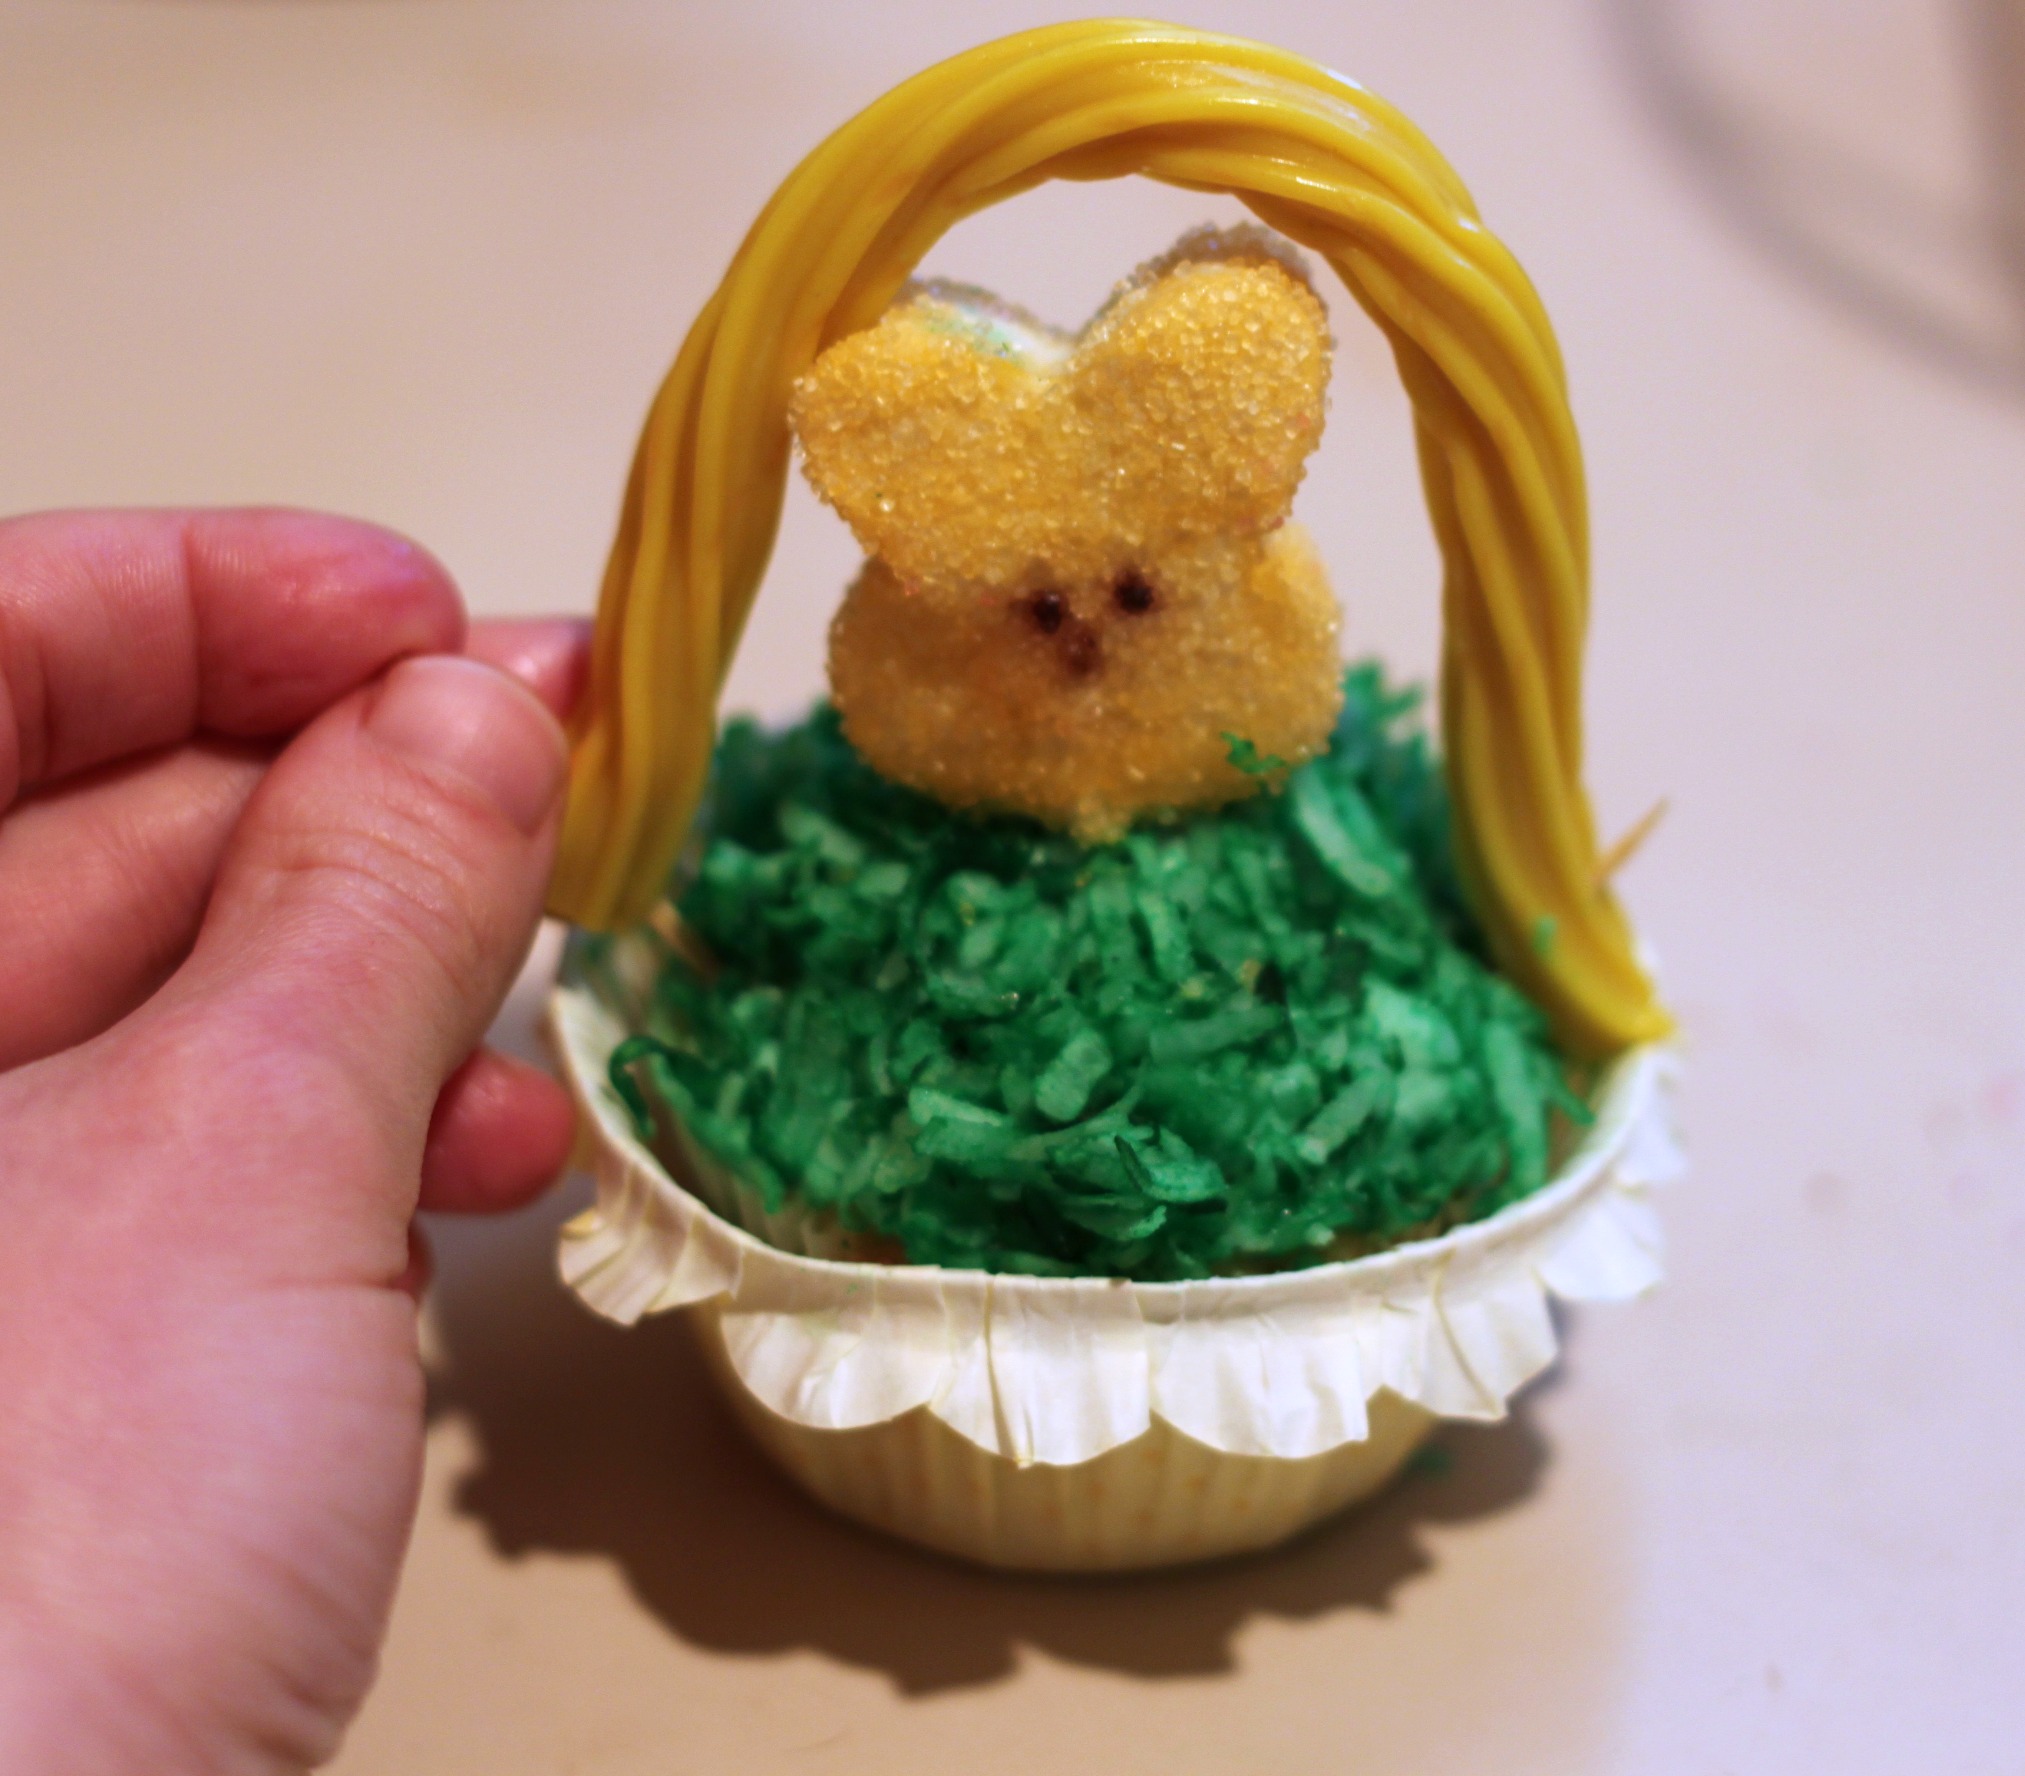 Put Twizzler onto Peepcake to make Easter basket cupcake